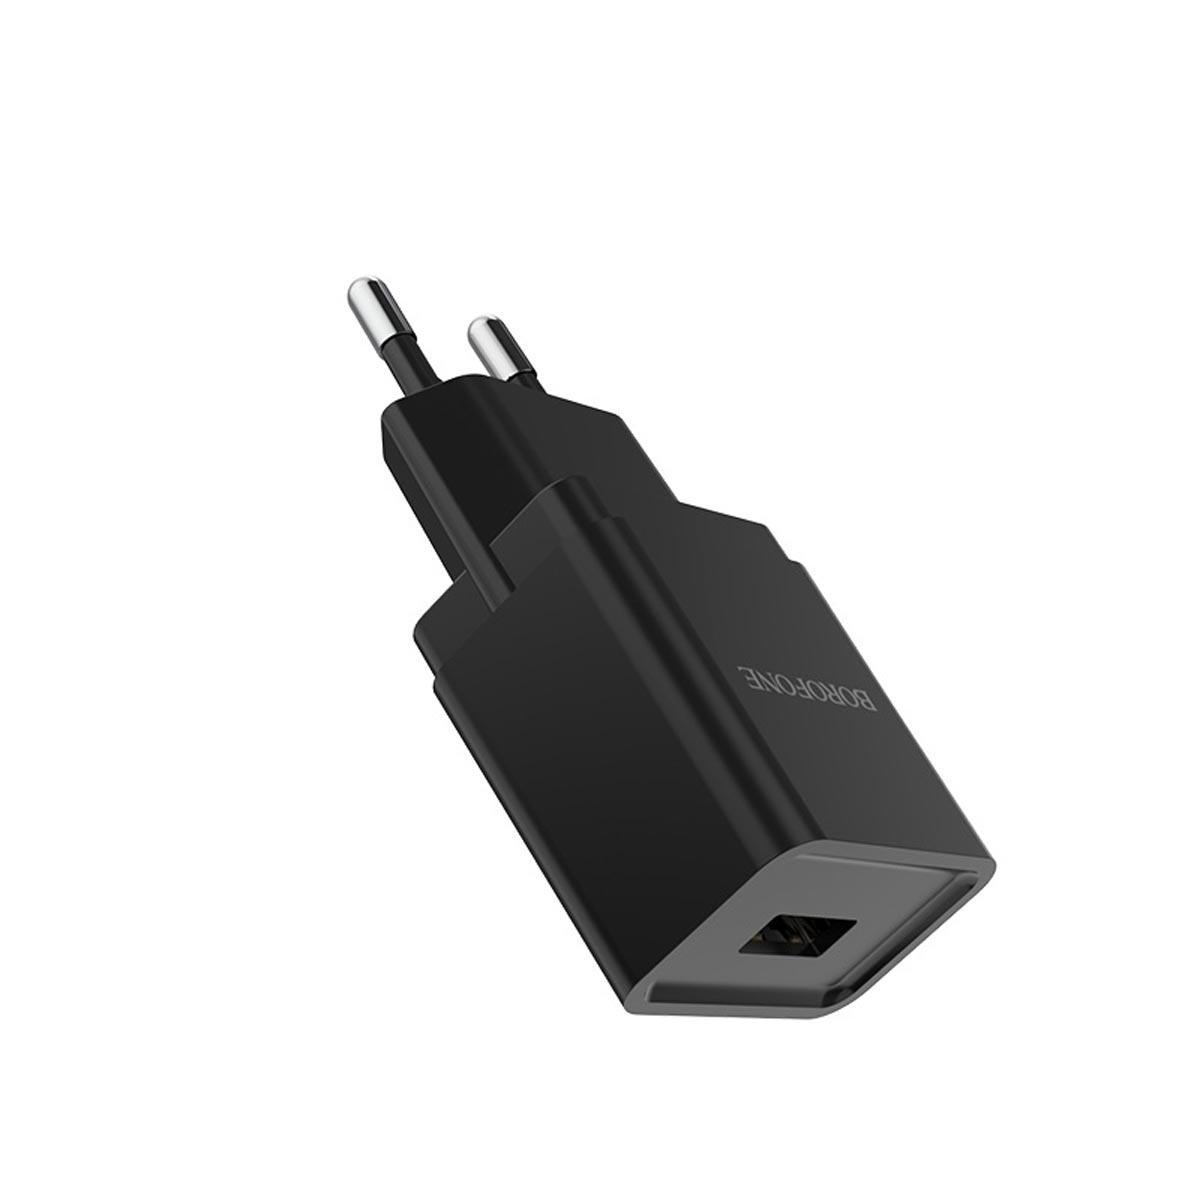 СЗУ (Сетевое зарядное устройство) BOROFONE BA19A Nimble, 1 USB, 1.0A, цвет черный